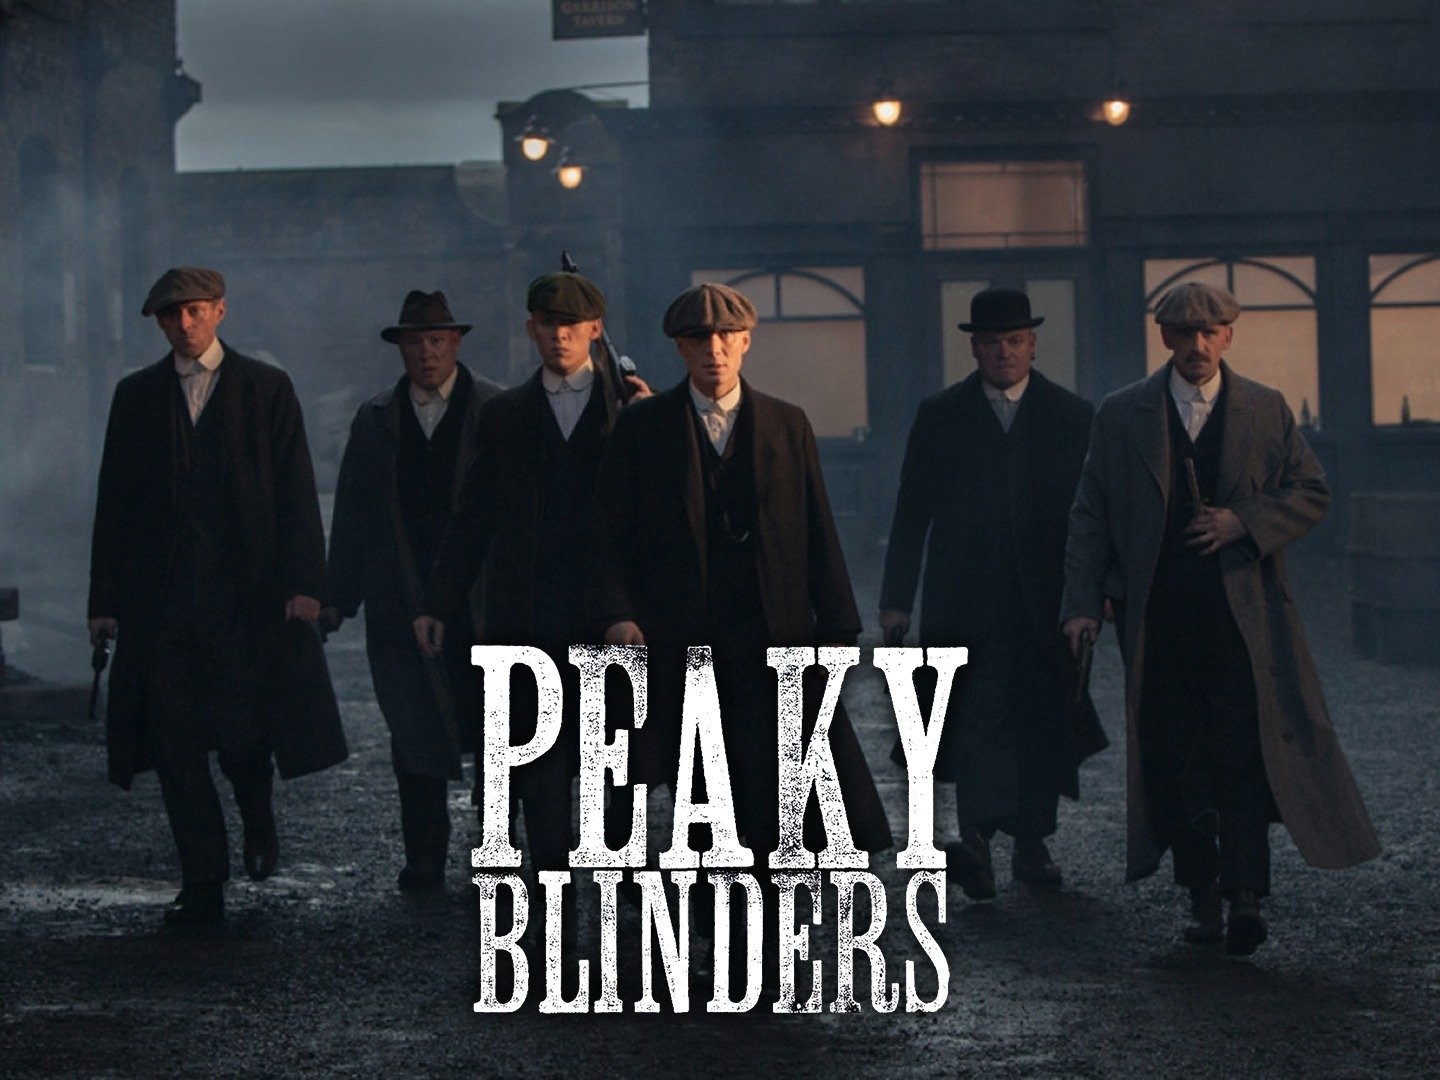 Why do people love “Peaky Blinders”?